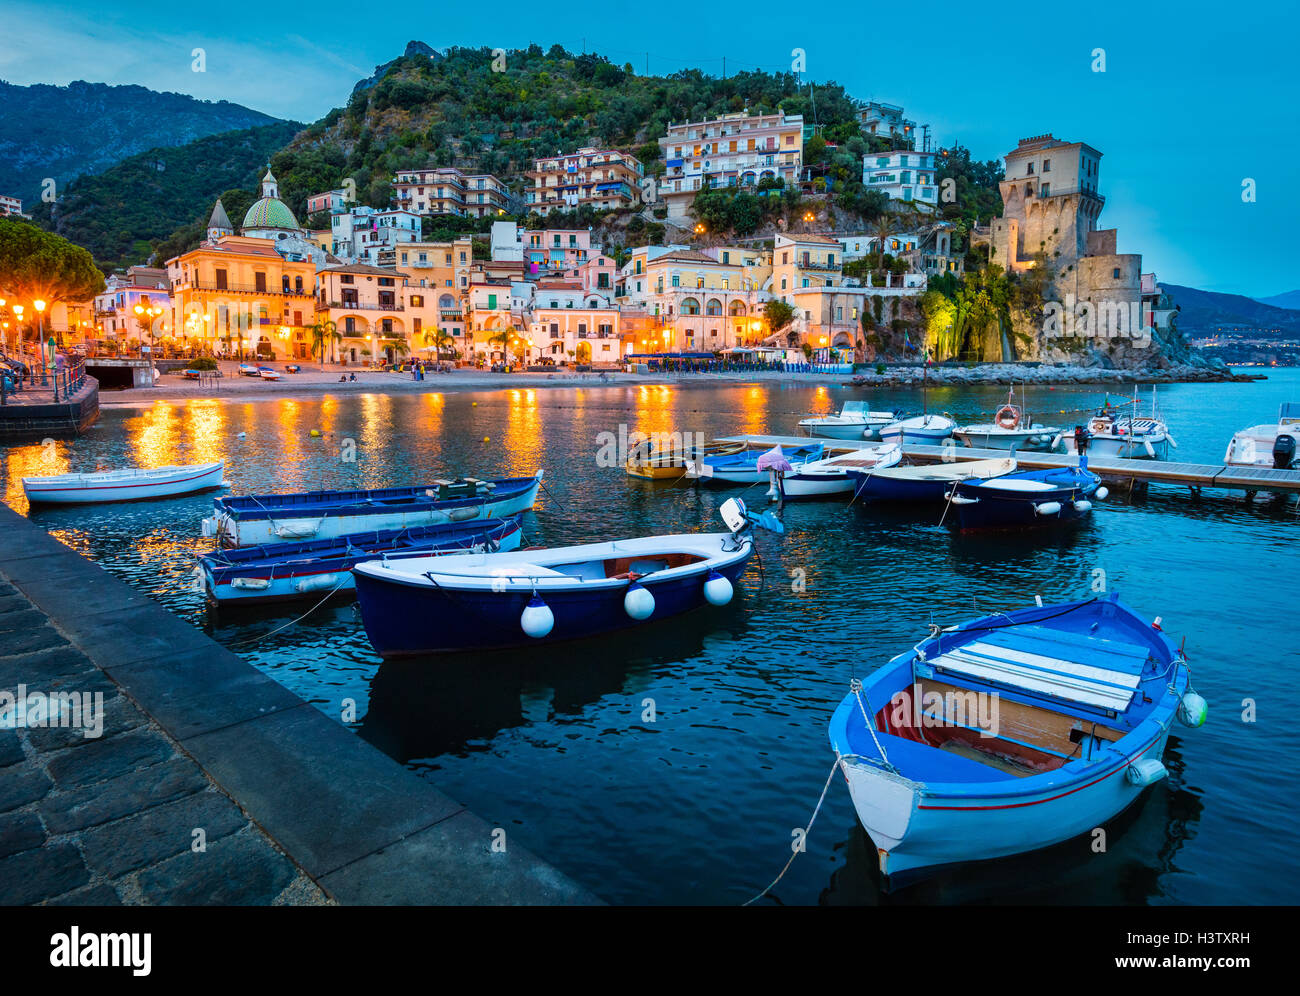 Cetara ist eine Stadt und Comune in der Provinz Salerno in der Region Kampanien im südwestlichen Italiens. Stockfoto